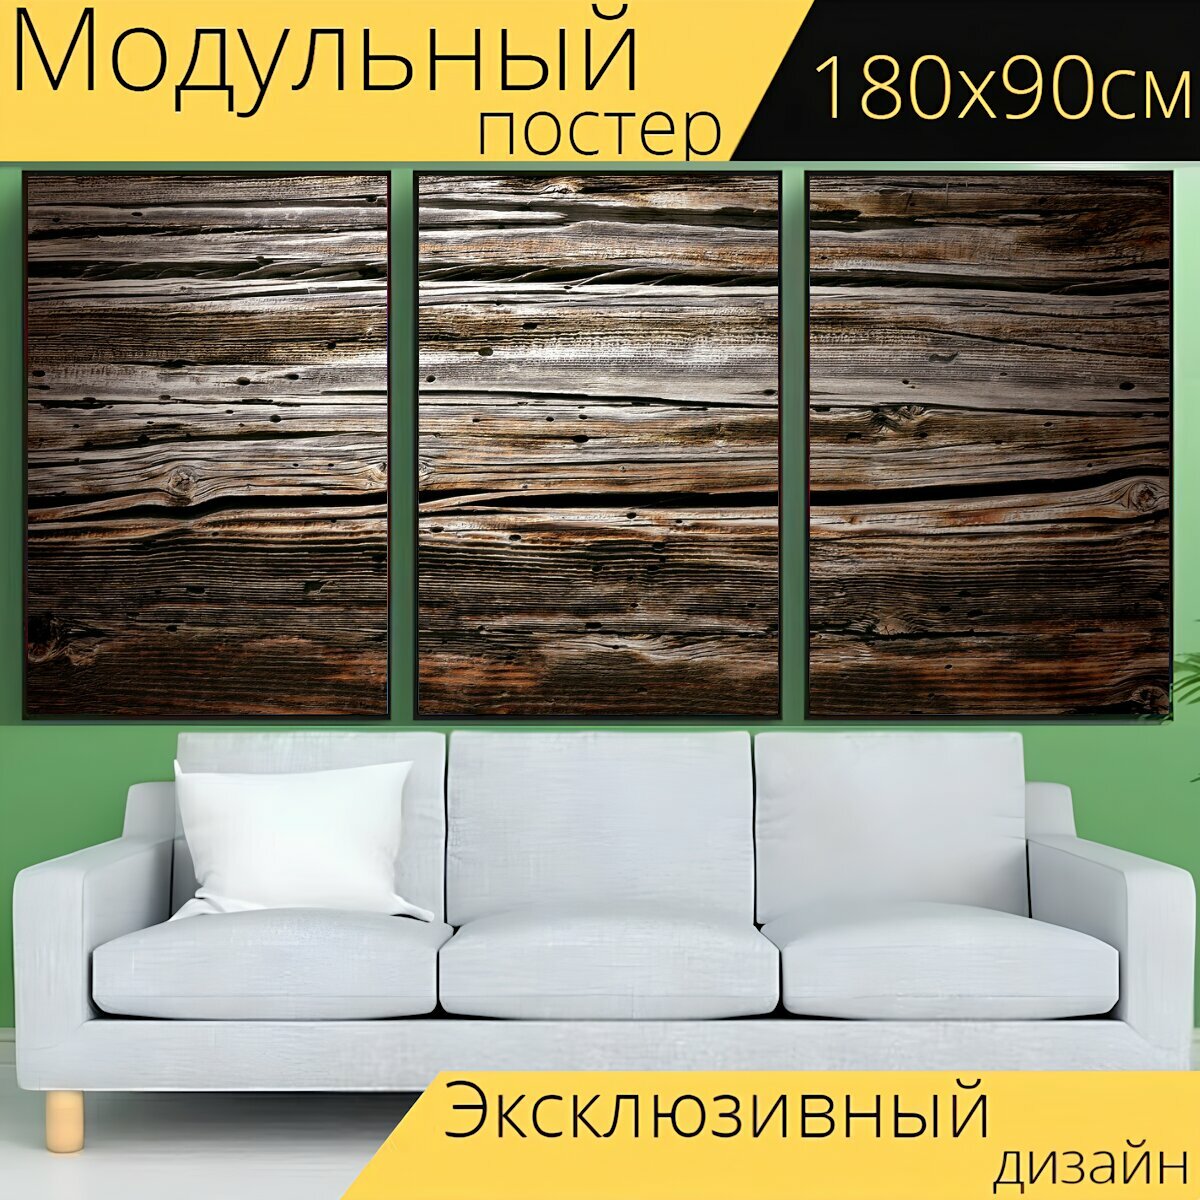 Модульный постер "Текстура, текстура древесины, выдержанный" 180 x 90 см. для интерьера